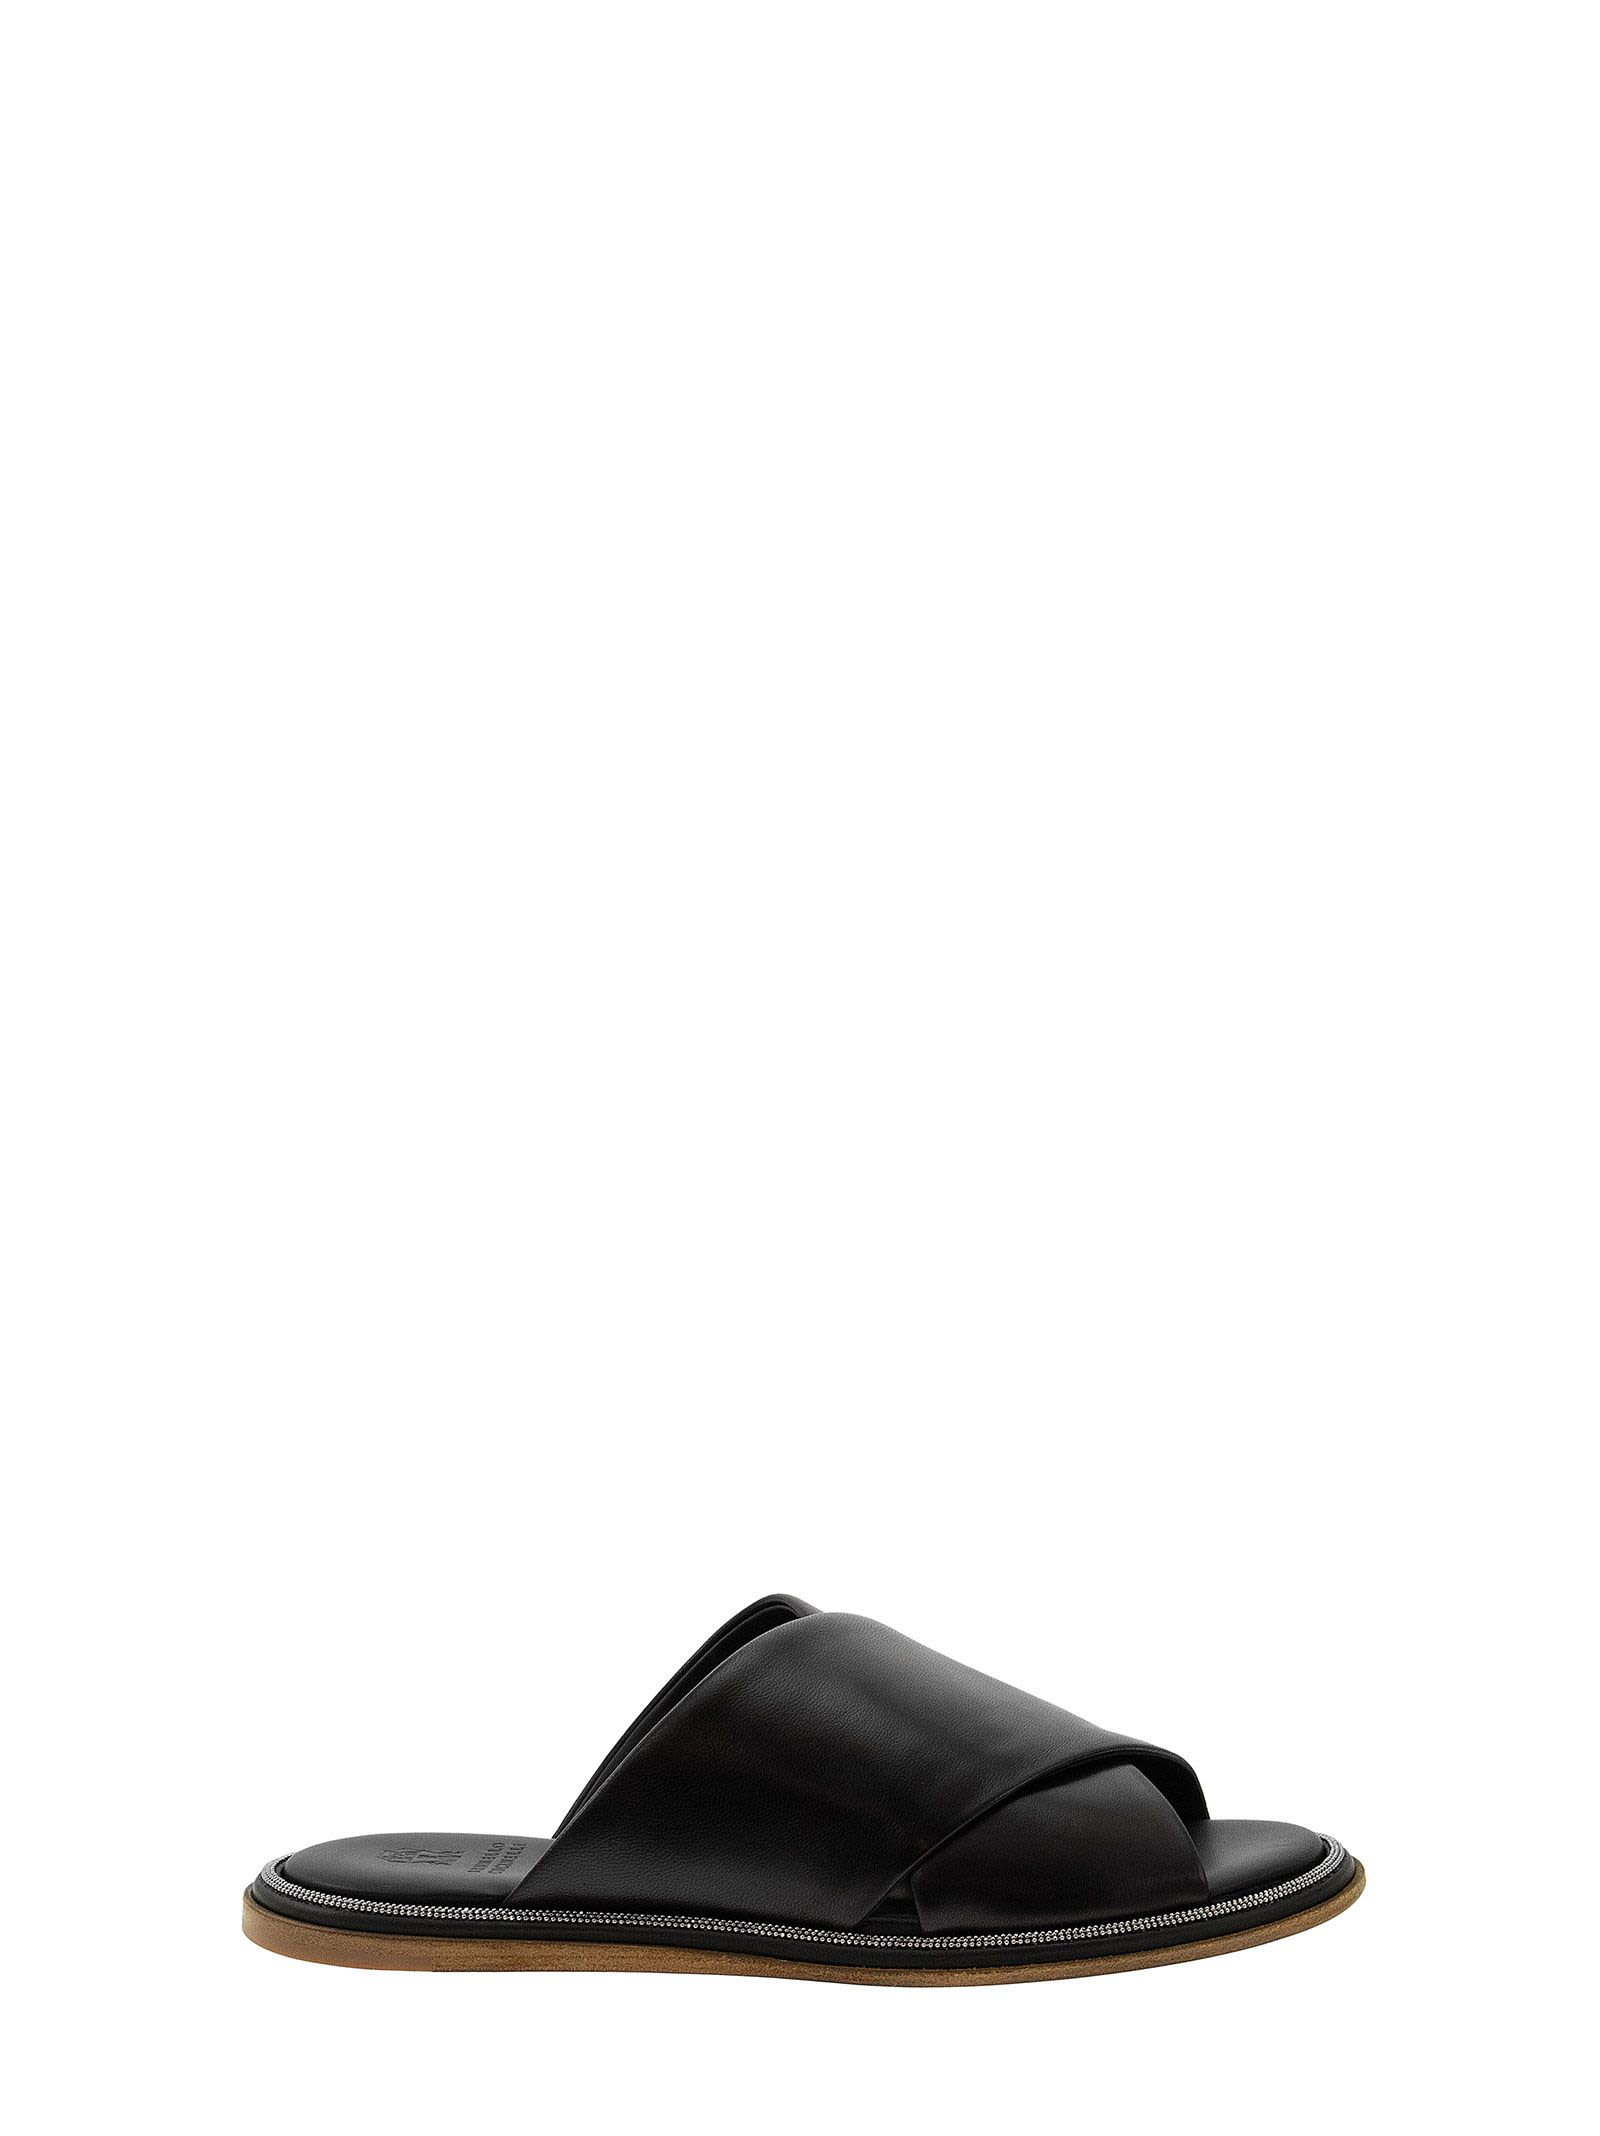 Brunello Cucinelli Nappa Leather Slides With Precious Edge Strap Black